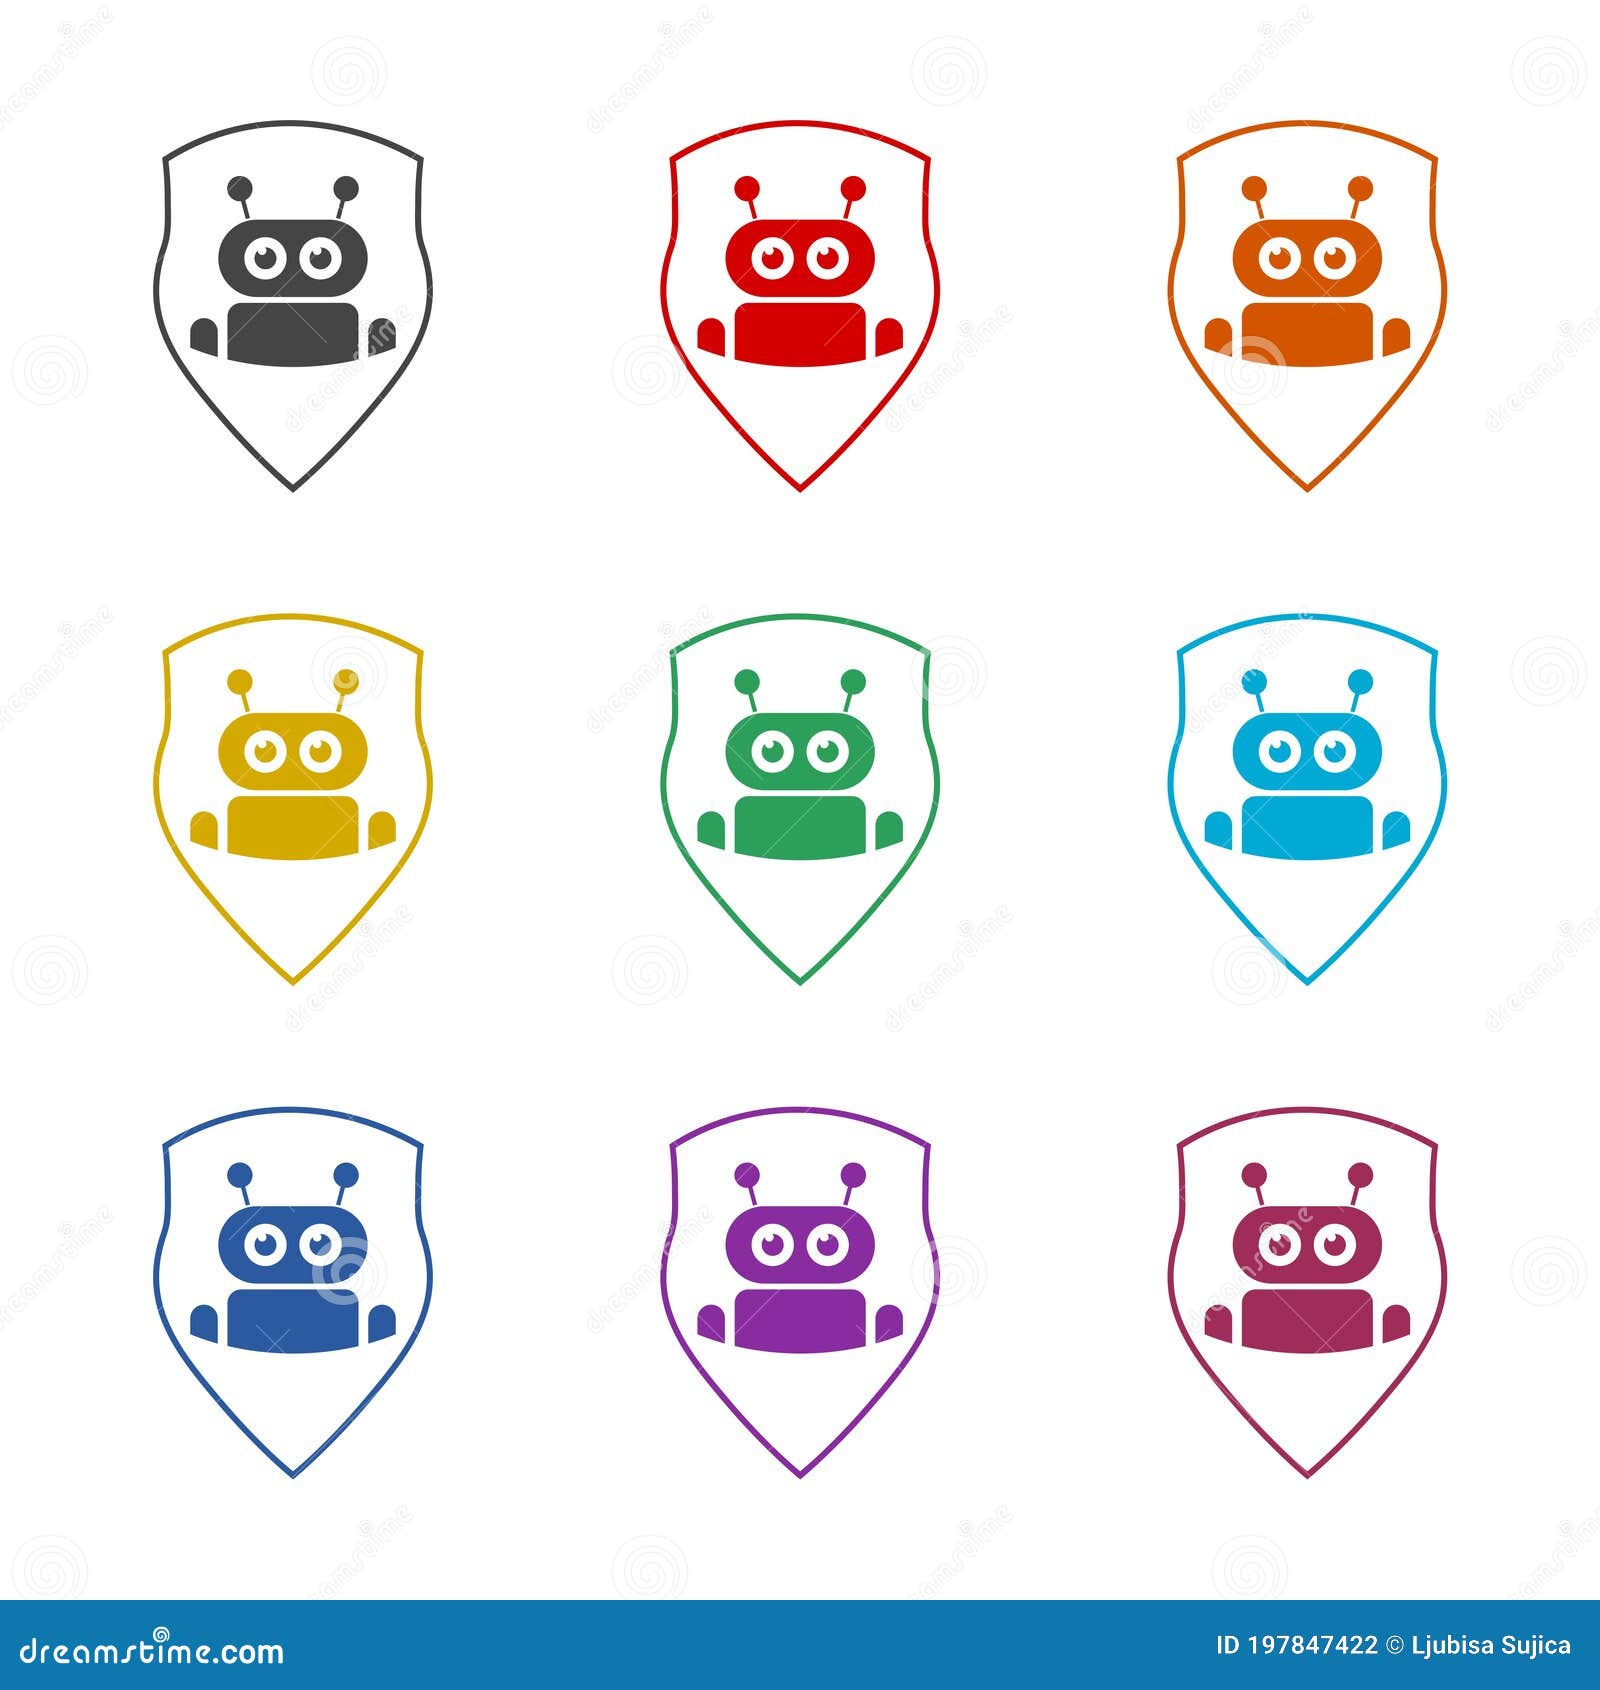 Biểu tượng robot đầu, bộ màu: Robot đầu với bộ màu cá tính sẽ khiến bạn đặc biệt hơn. Các biểu tượng mới nhất đang phát triển để phù hợp với sở thích của từng người. Bạn có thể sử dụng chúng trên các trang web cá nhân, trang fanpage hoặc ứng dụng. Hãy tạo ra một bộ sưu tập biểu tượng robot đầu, bộ màu của riêng bạn.